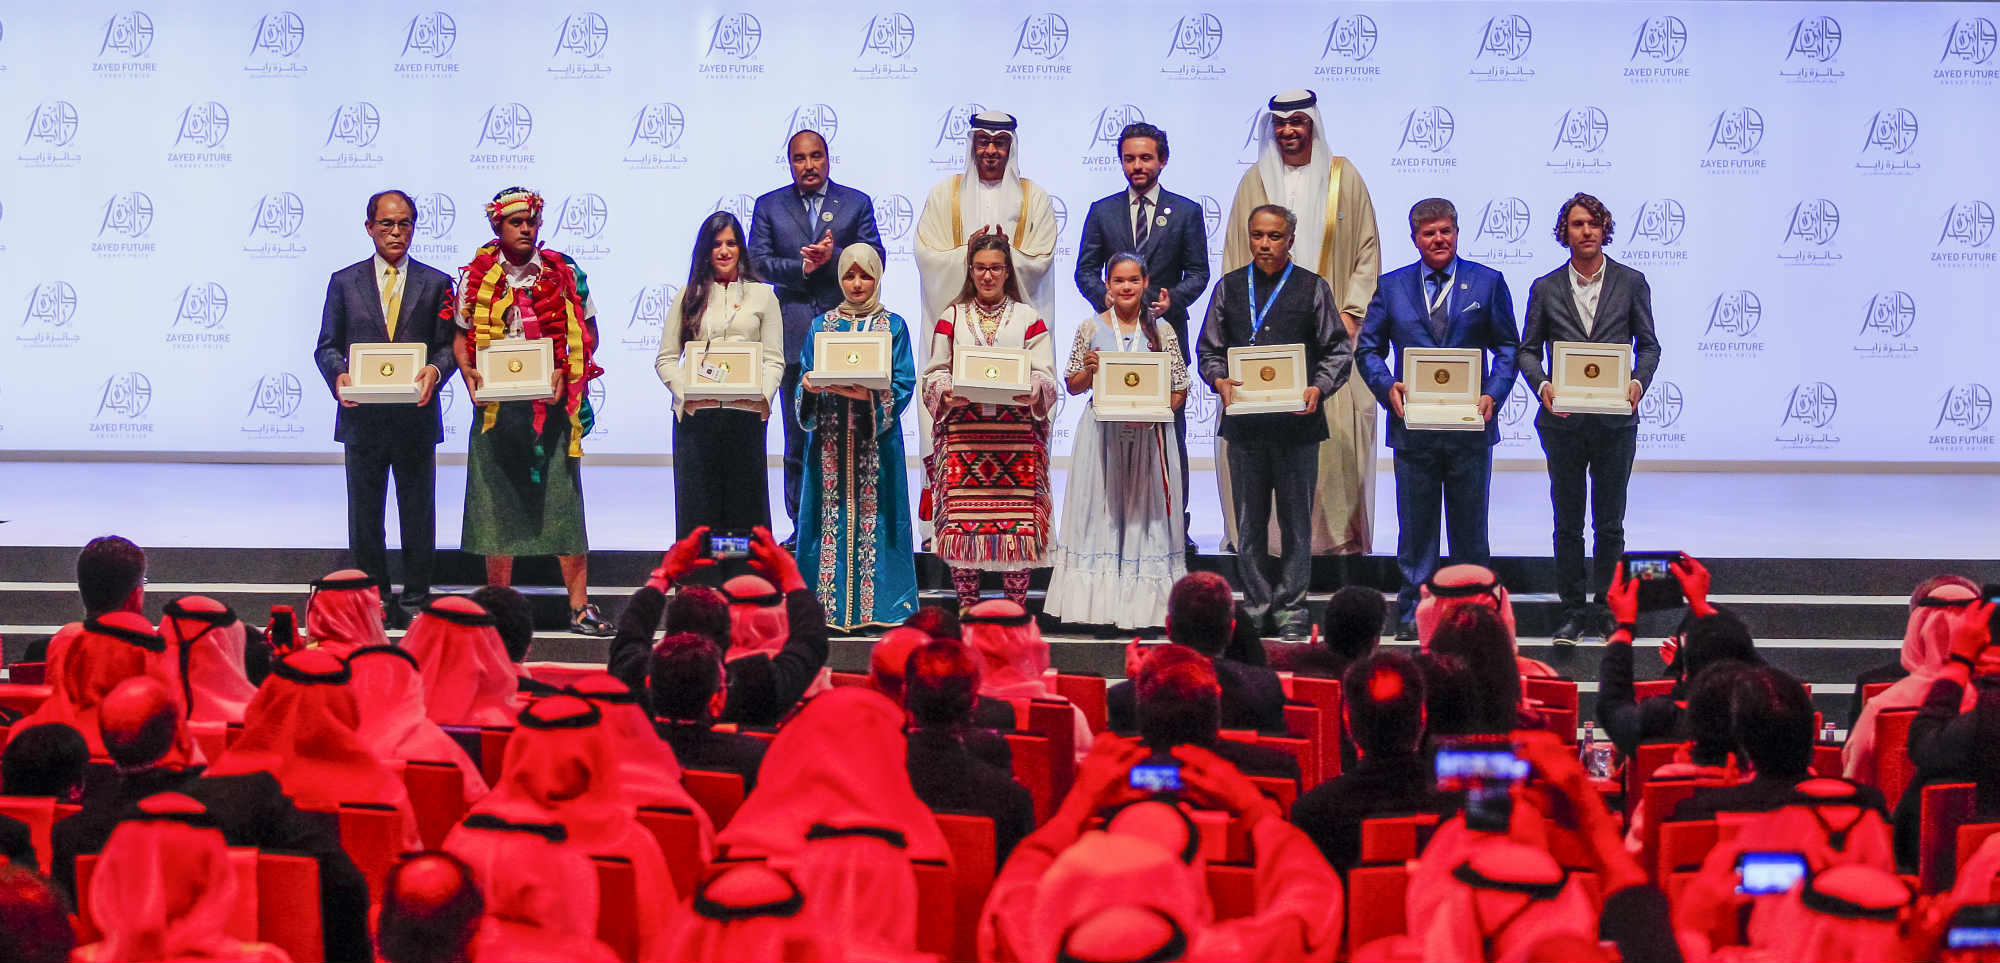 Colegios de secundaria y organizaciones latinoamericanas: a participar por Premio Zayed de Sostenibilidad